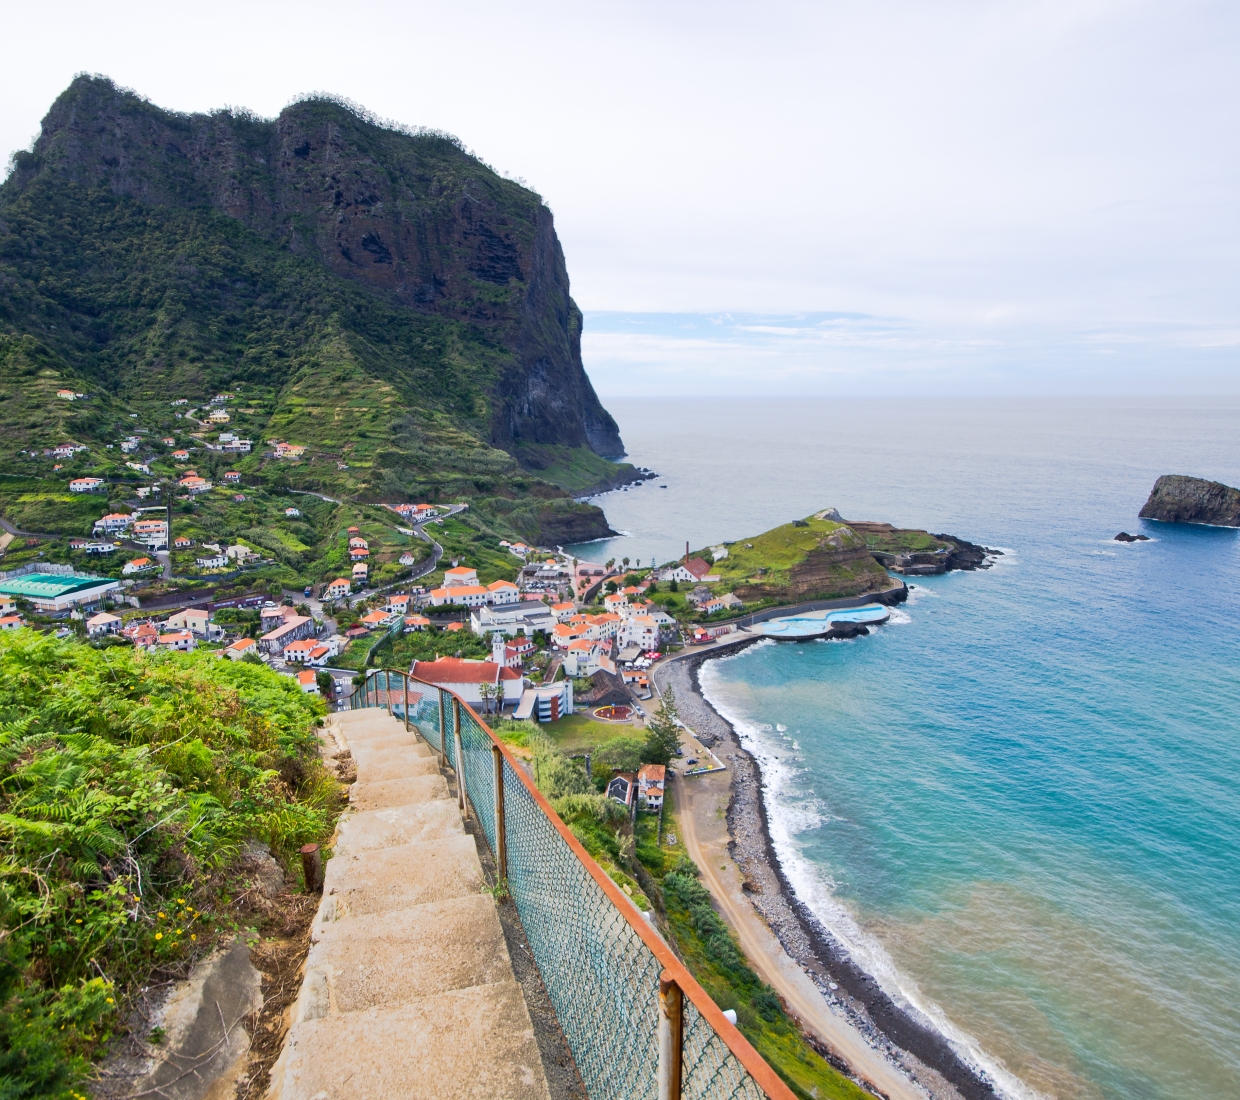 Seleção dos melhores e mais bonitos hotéis e casas de férias na Madeira